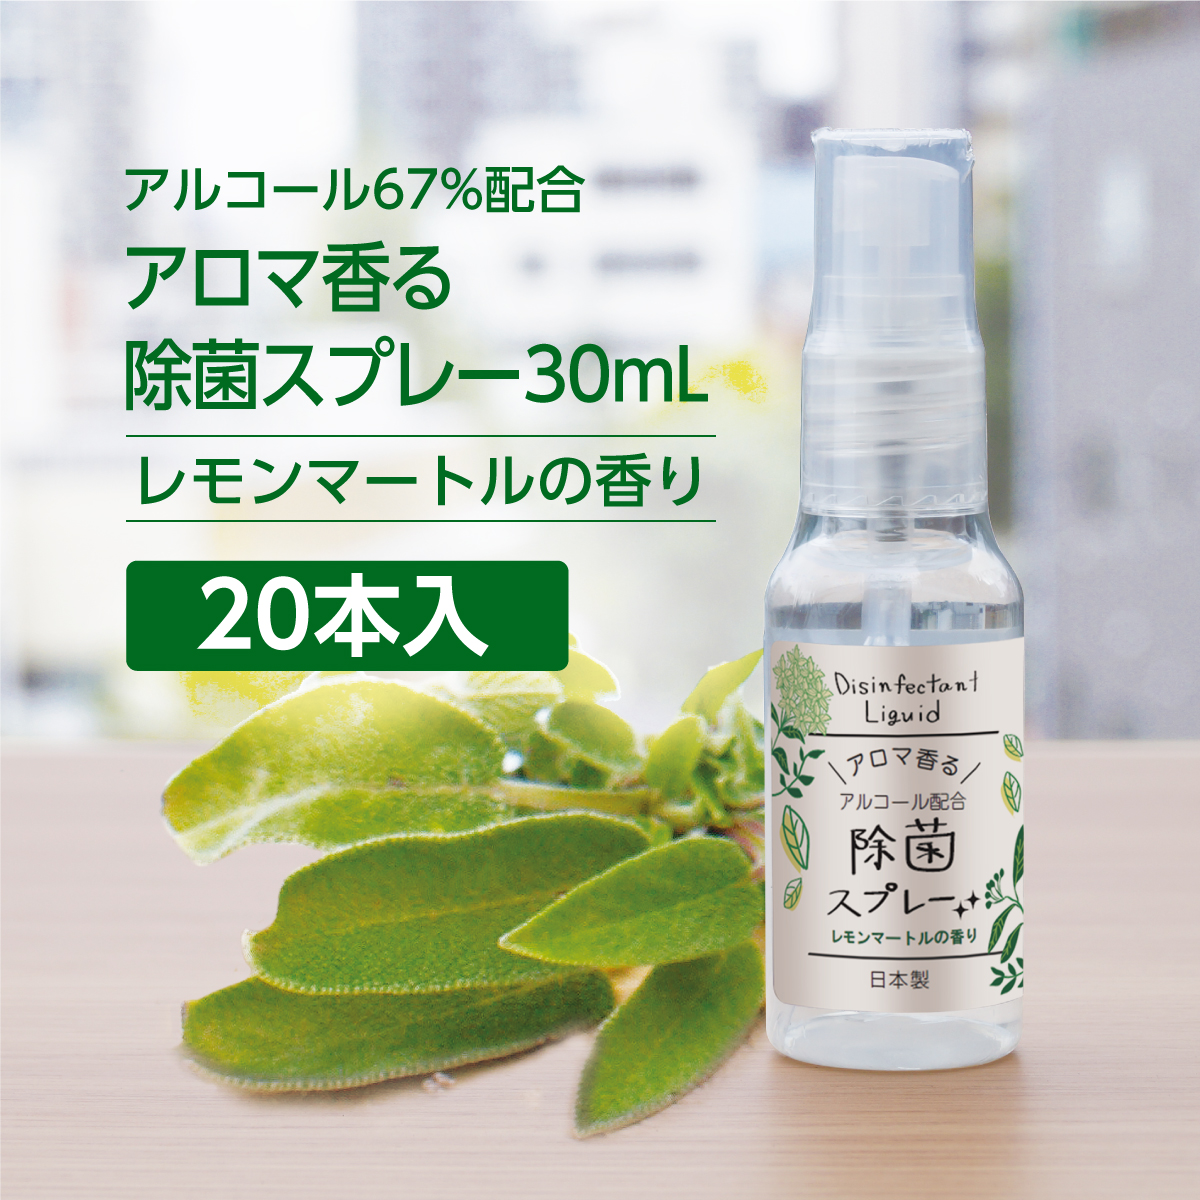 【SALE 特価】除菌スプレー レモンマートルの香り 30mL (20個)